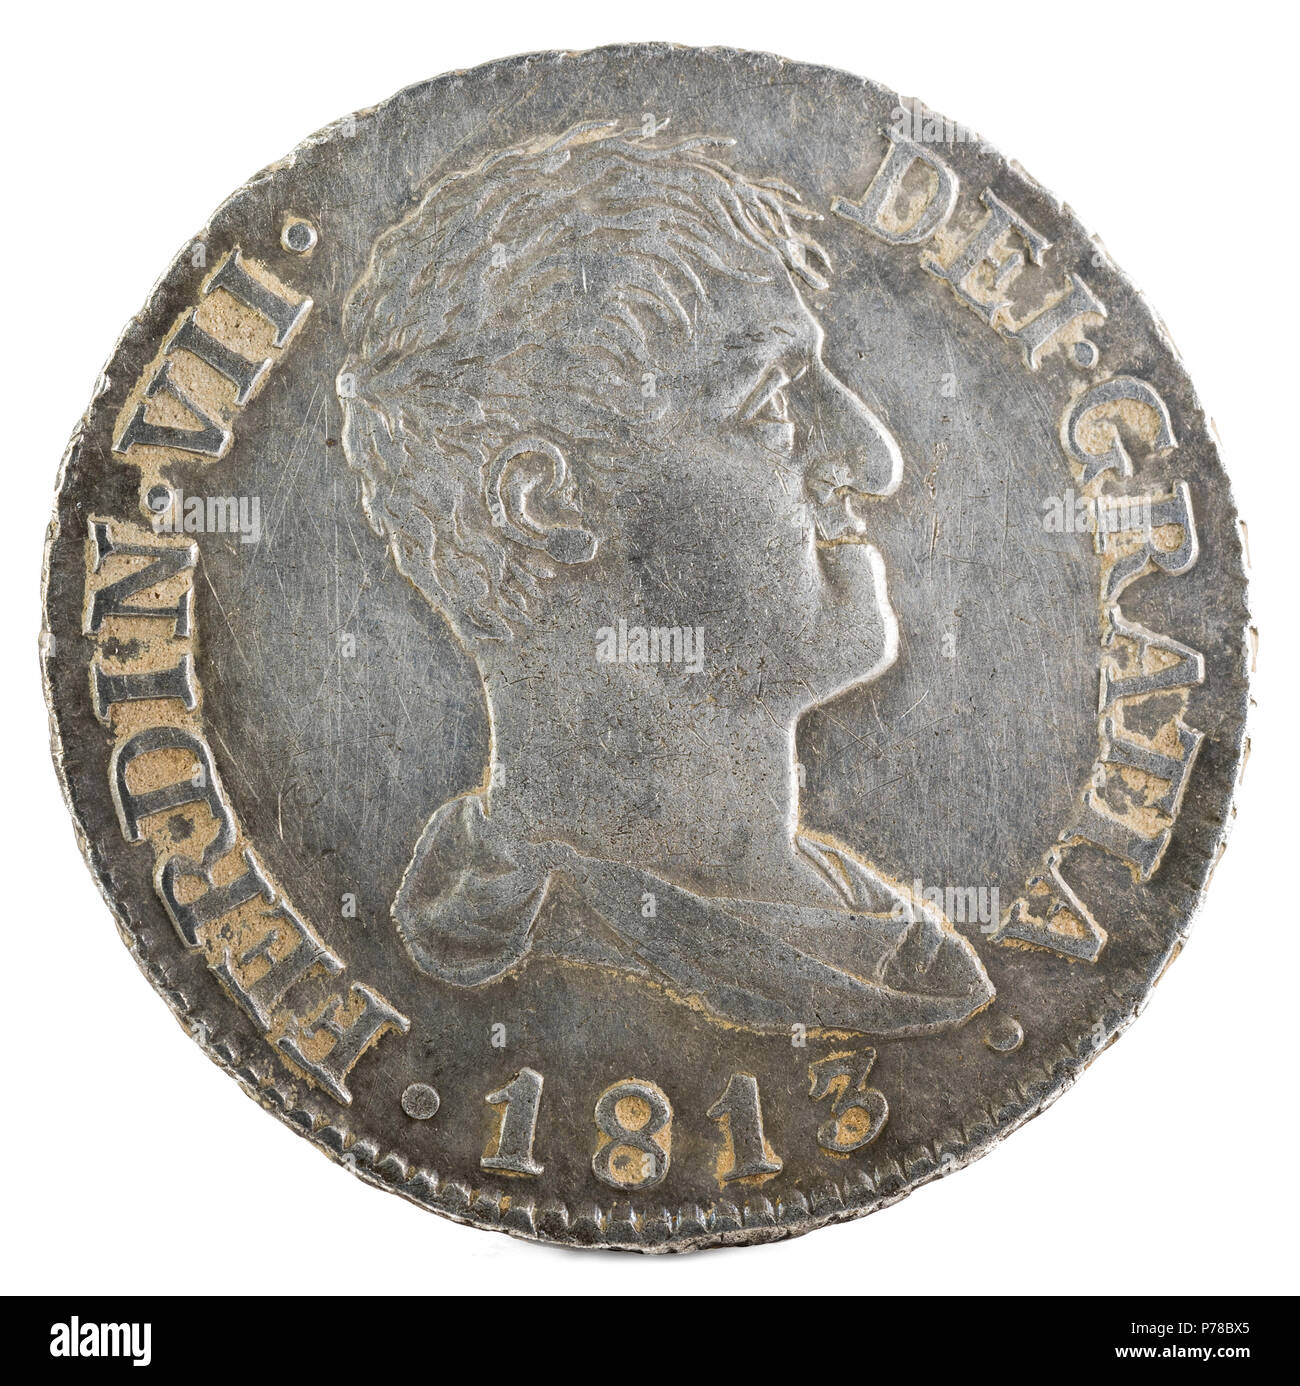 Antigua moneda de plata española del rey Fernando VII. 1813. Acuñado en Madrid. 2 reales. Anverso. Foto de stock